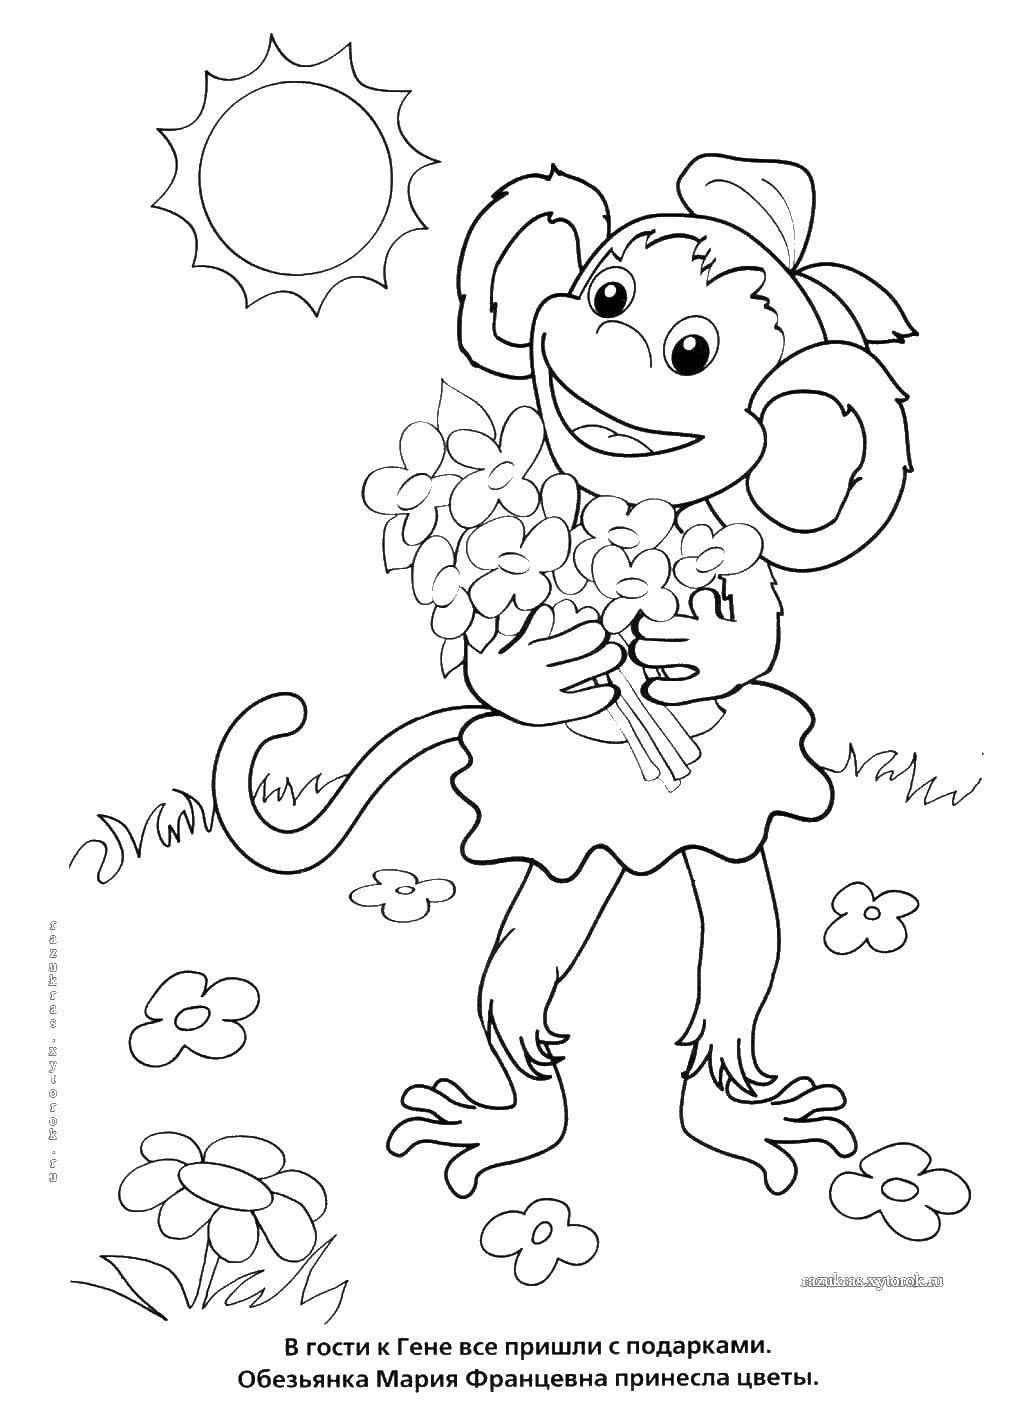 Coloring Monkey Mary. Category Cartoon character. Tags:  Cartoon character, Cheburashka and Crocodile Gena.